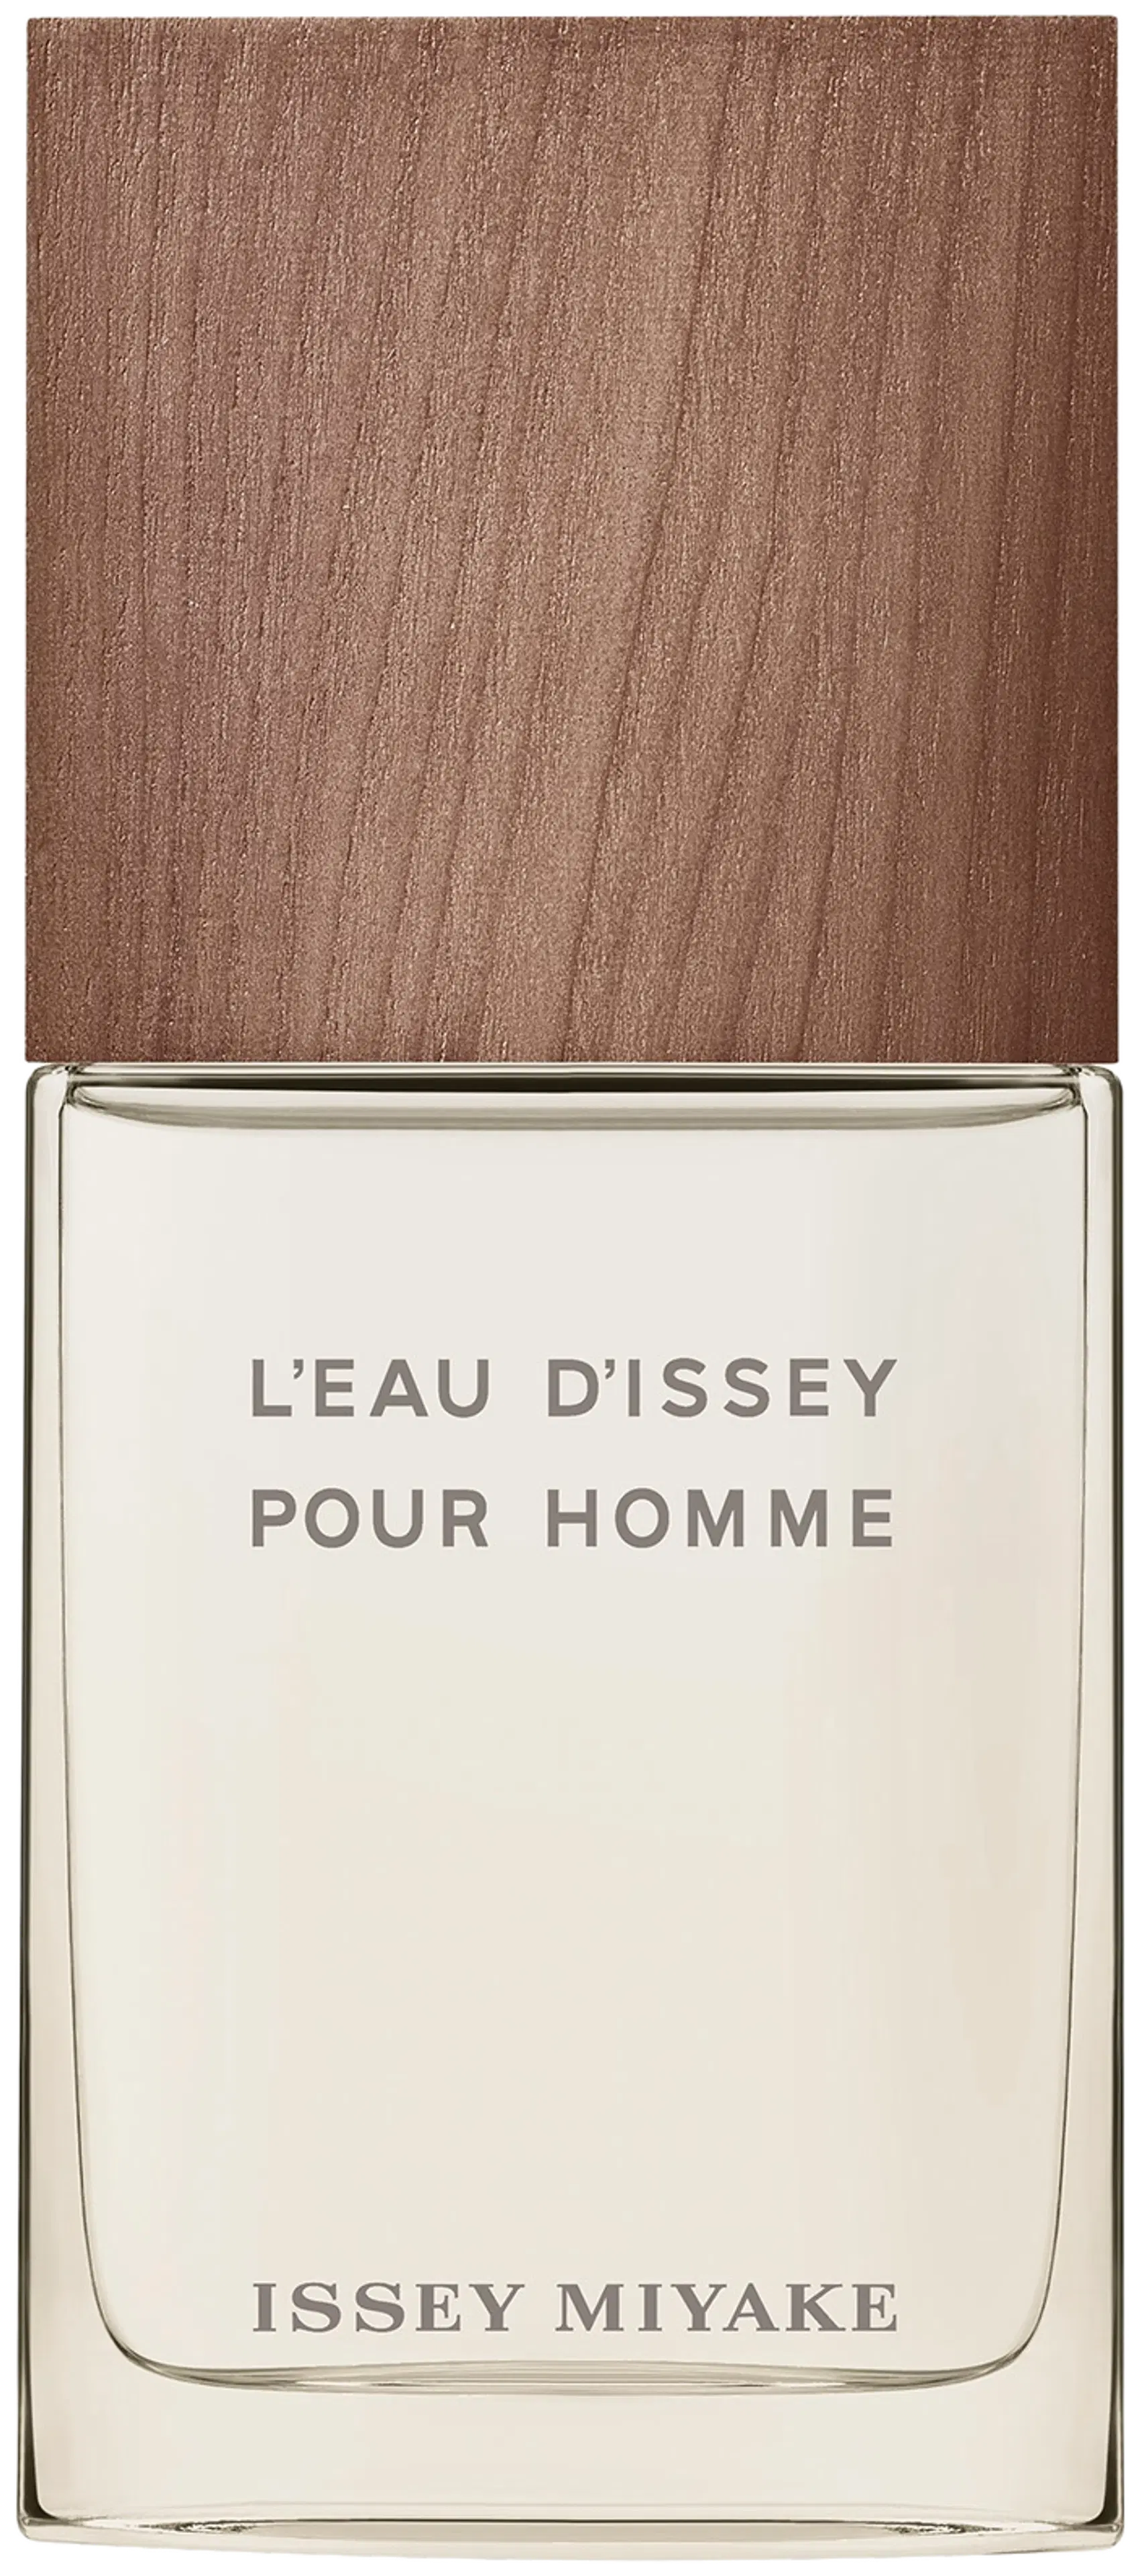 Issey Miyake L'Eau d'Issey Pour Homme Eau&Vetiver Eau de Toilette Intense 50 ml